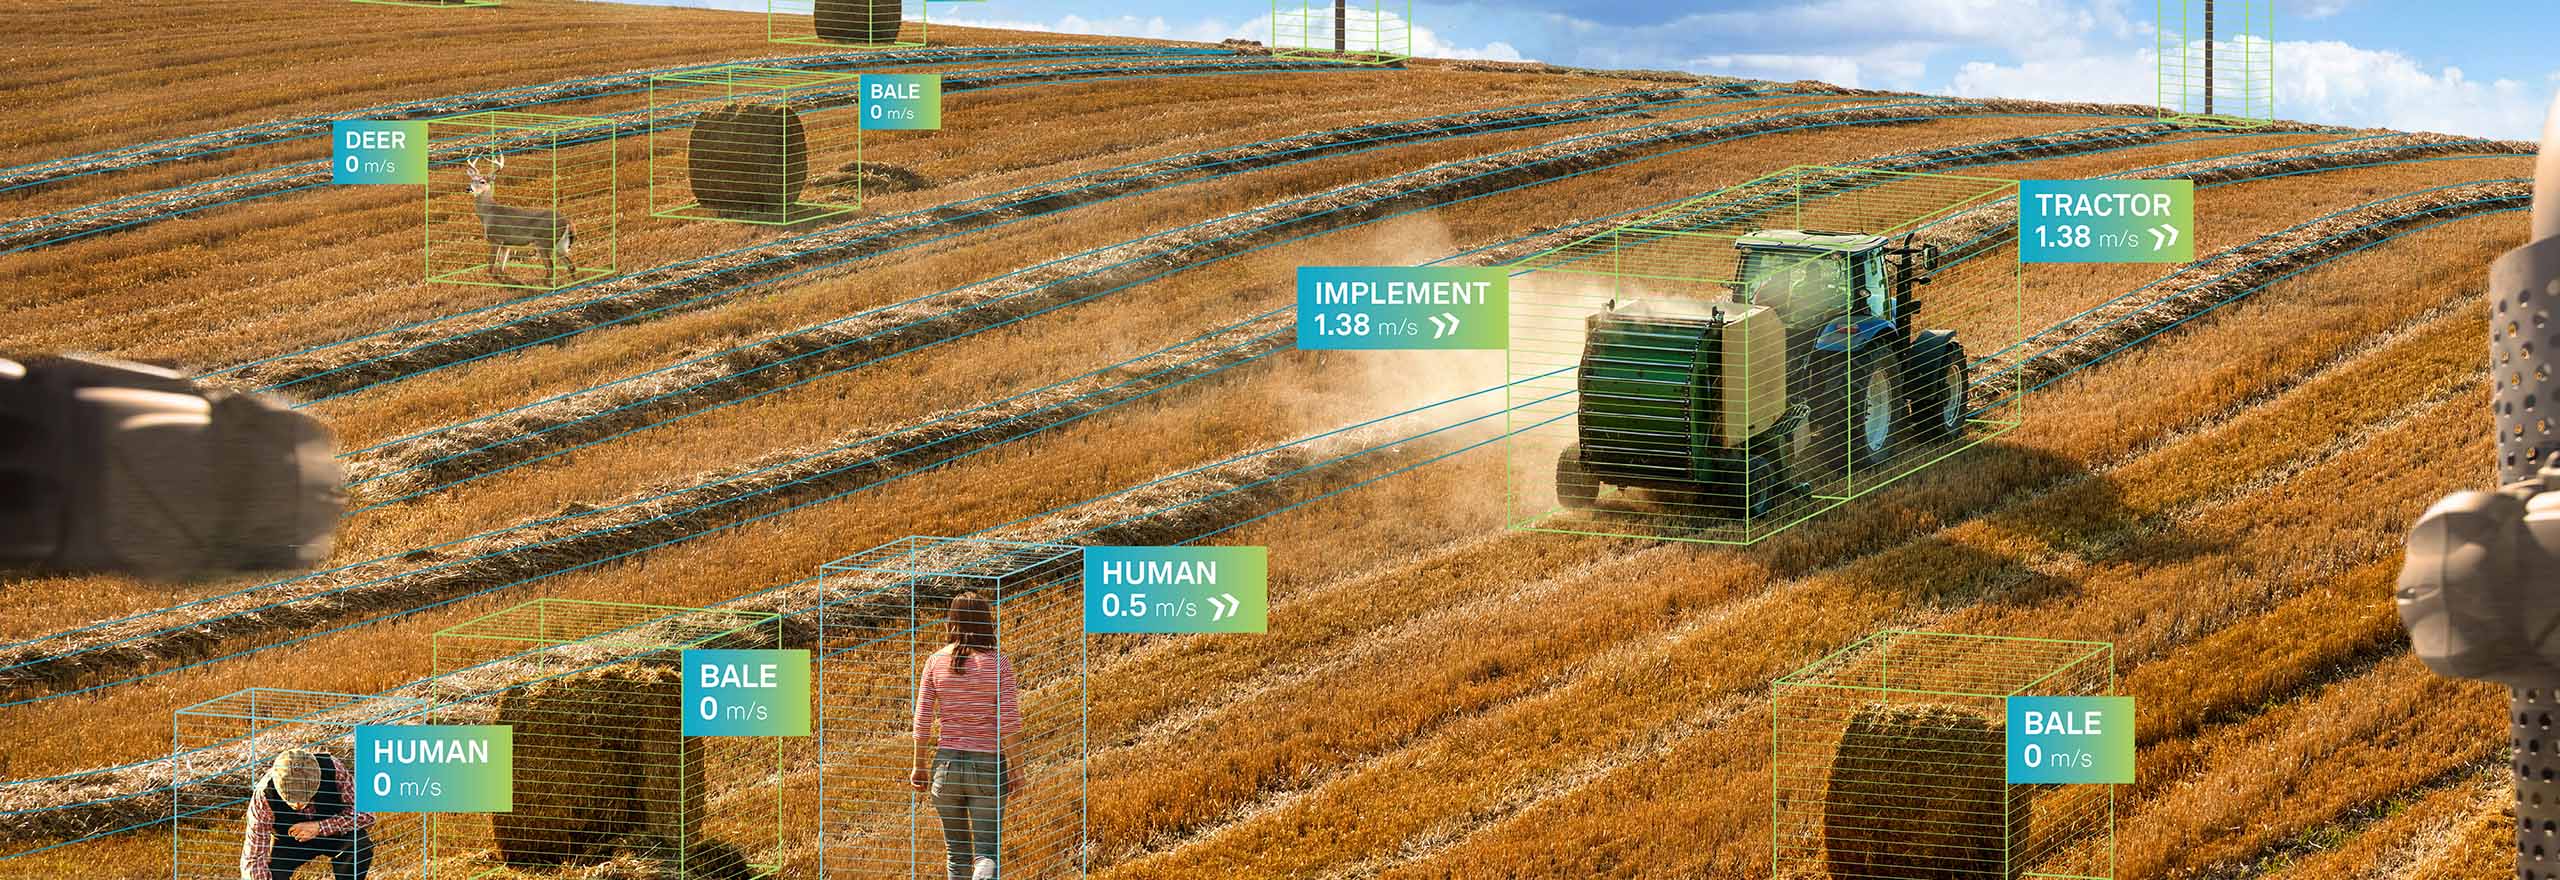 Trattore autonomo Hexagon al lavoro sul campo in un contesto agricolo intelligente